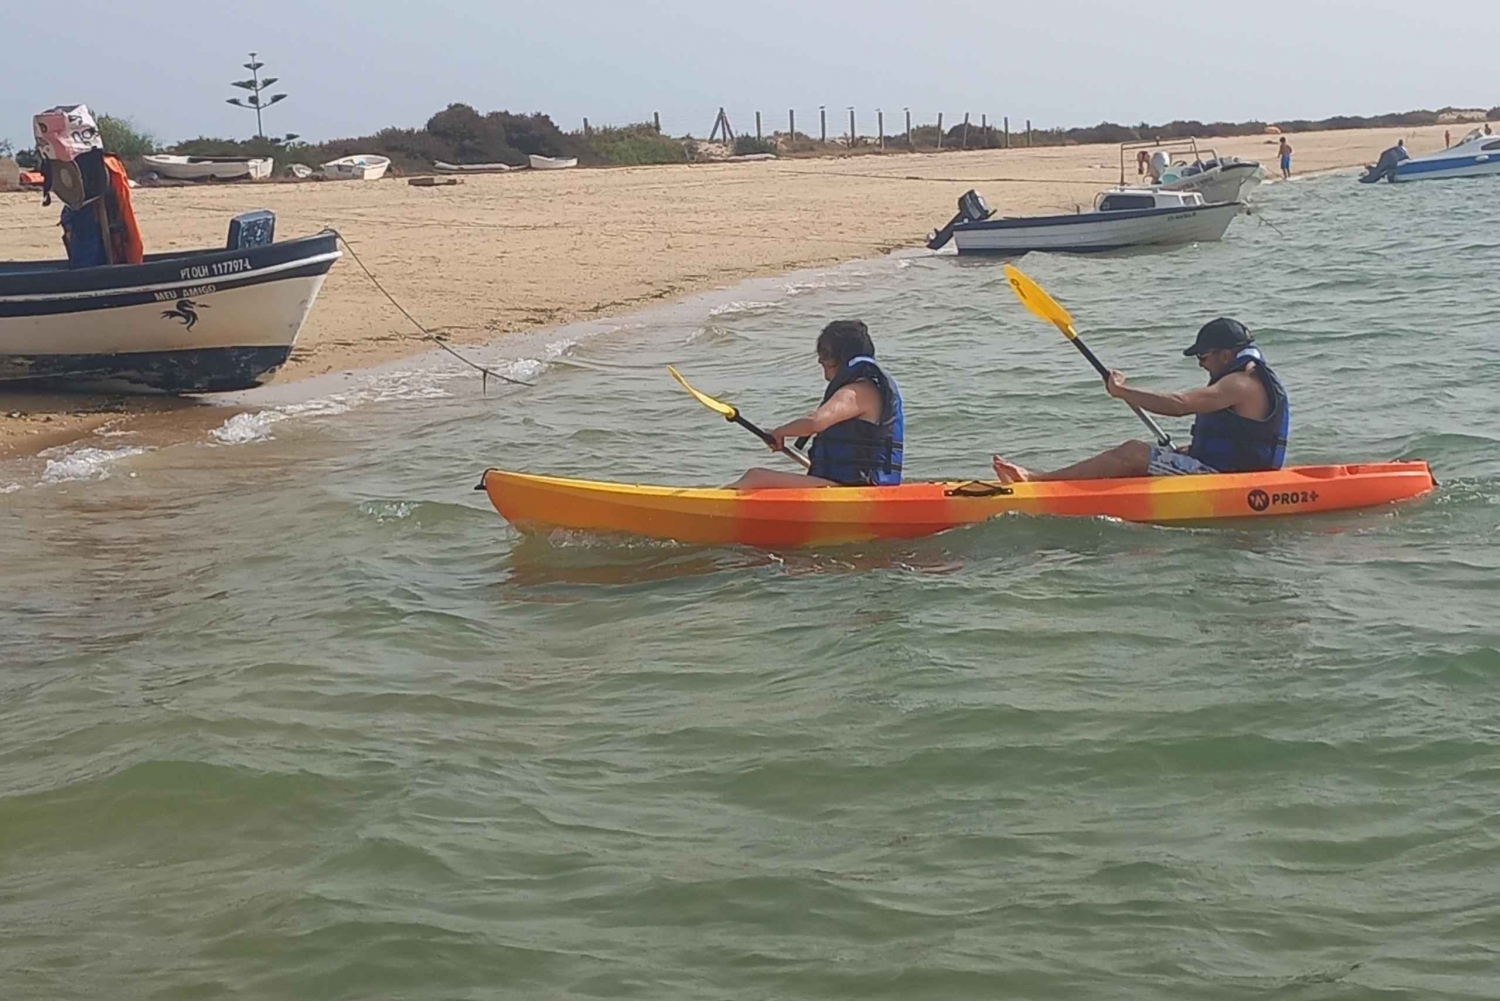 Kayak Tour in Ria Formosa - Olhão